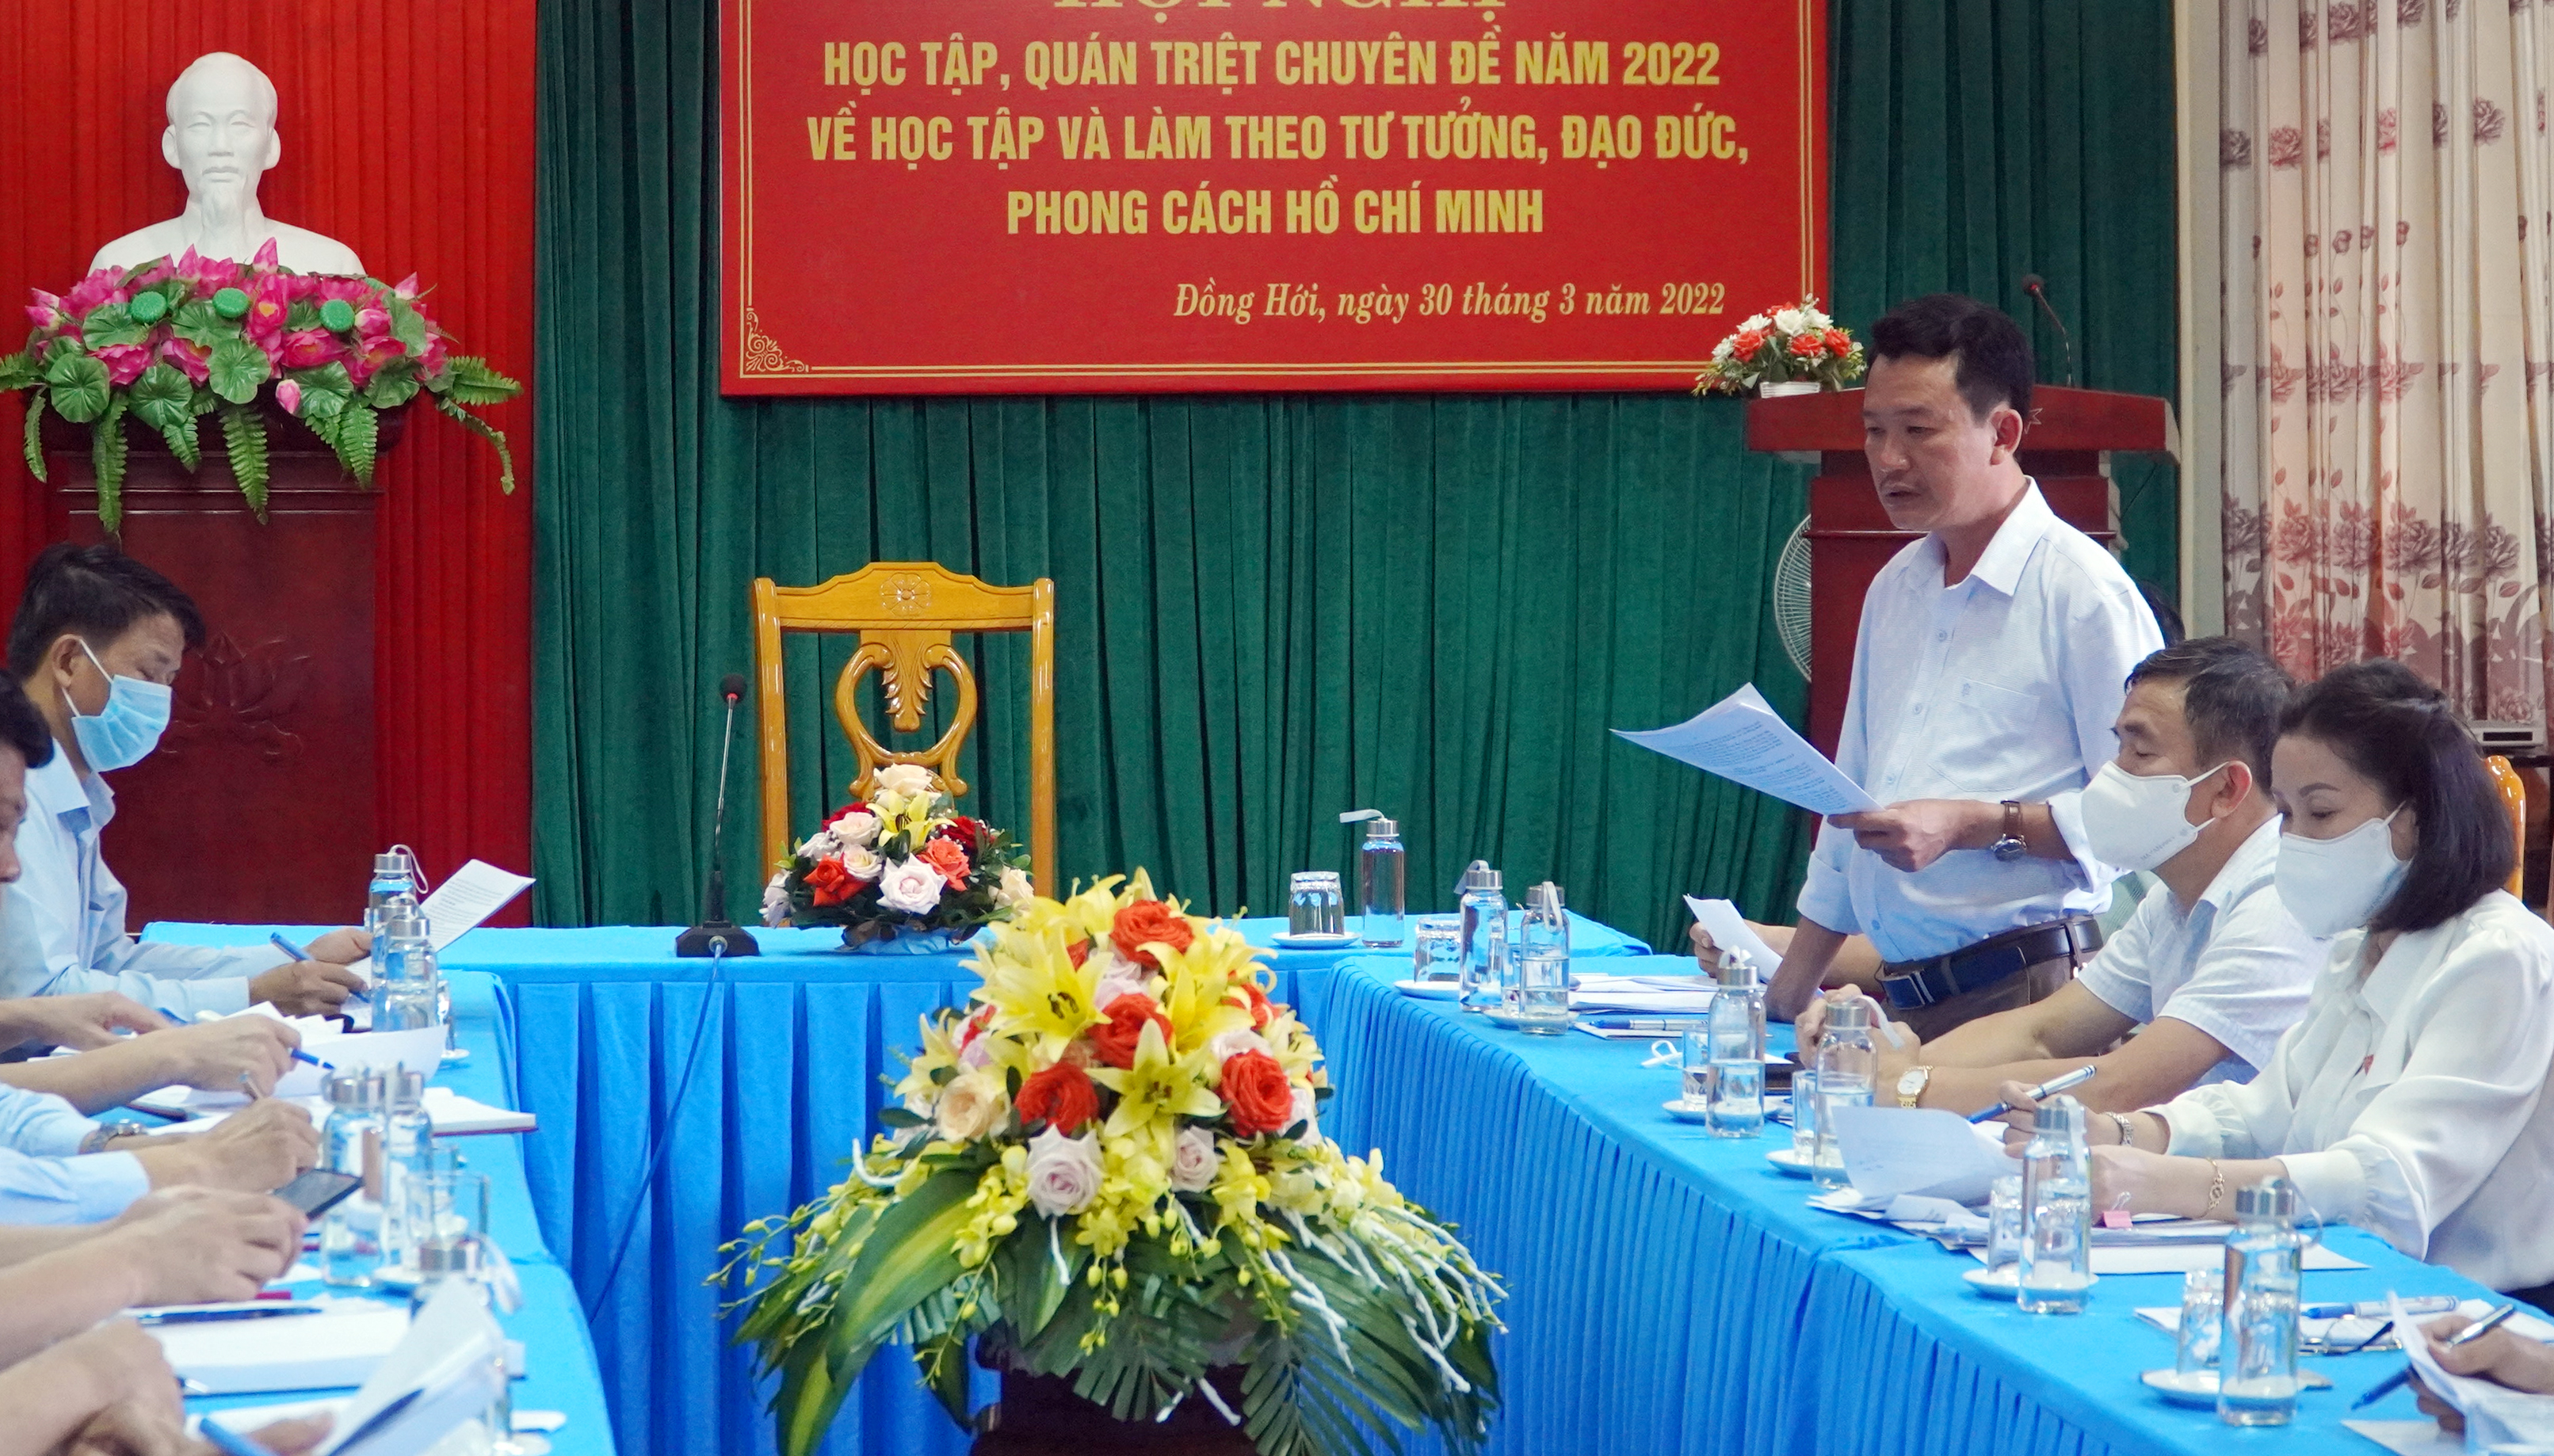 Đại biểu Trần Quang Minh phát biểu tại buổi làm việc.